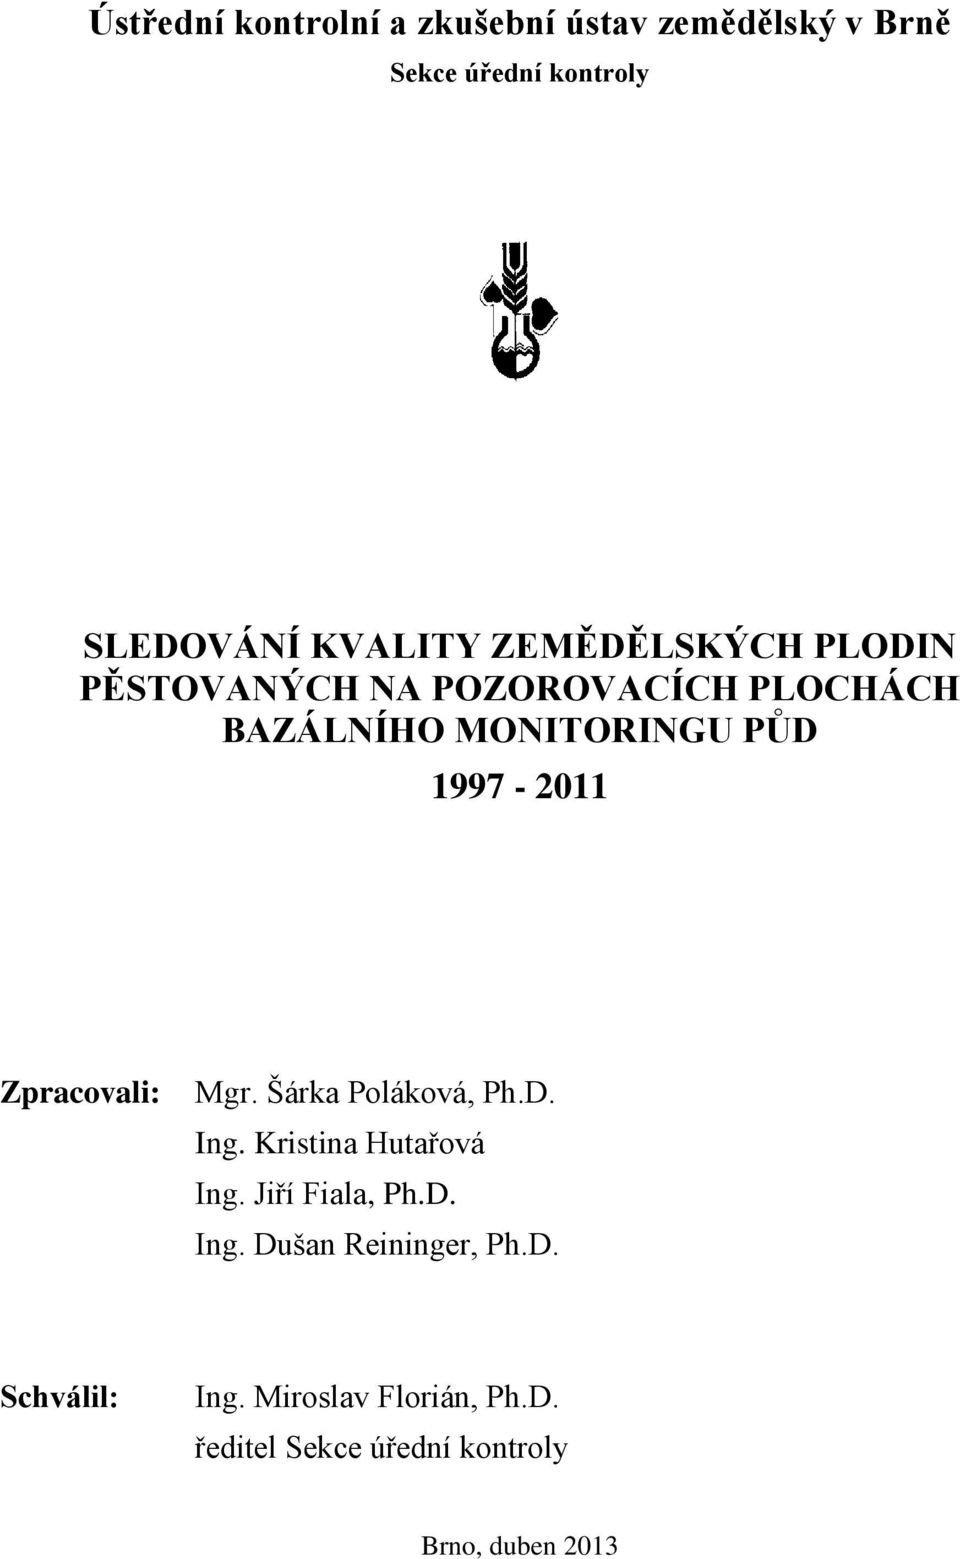 Zpracovali: Mgr. Šárka Poláková, Ph.D. Ing. Kristina Hutařová Ing. Jiří Fiala, Ph.D. Ing. Dušan Reininger, Ph.